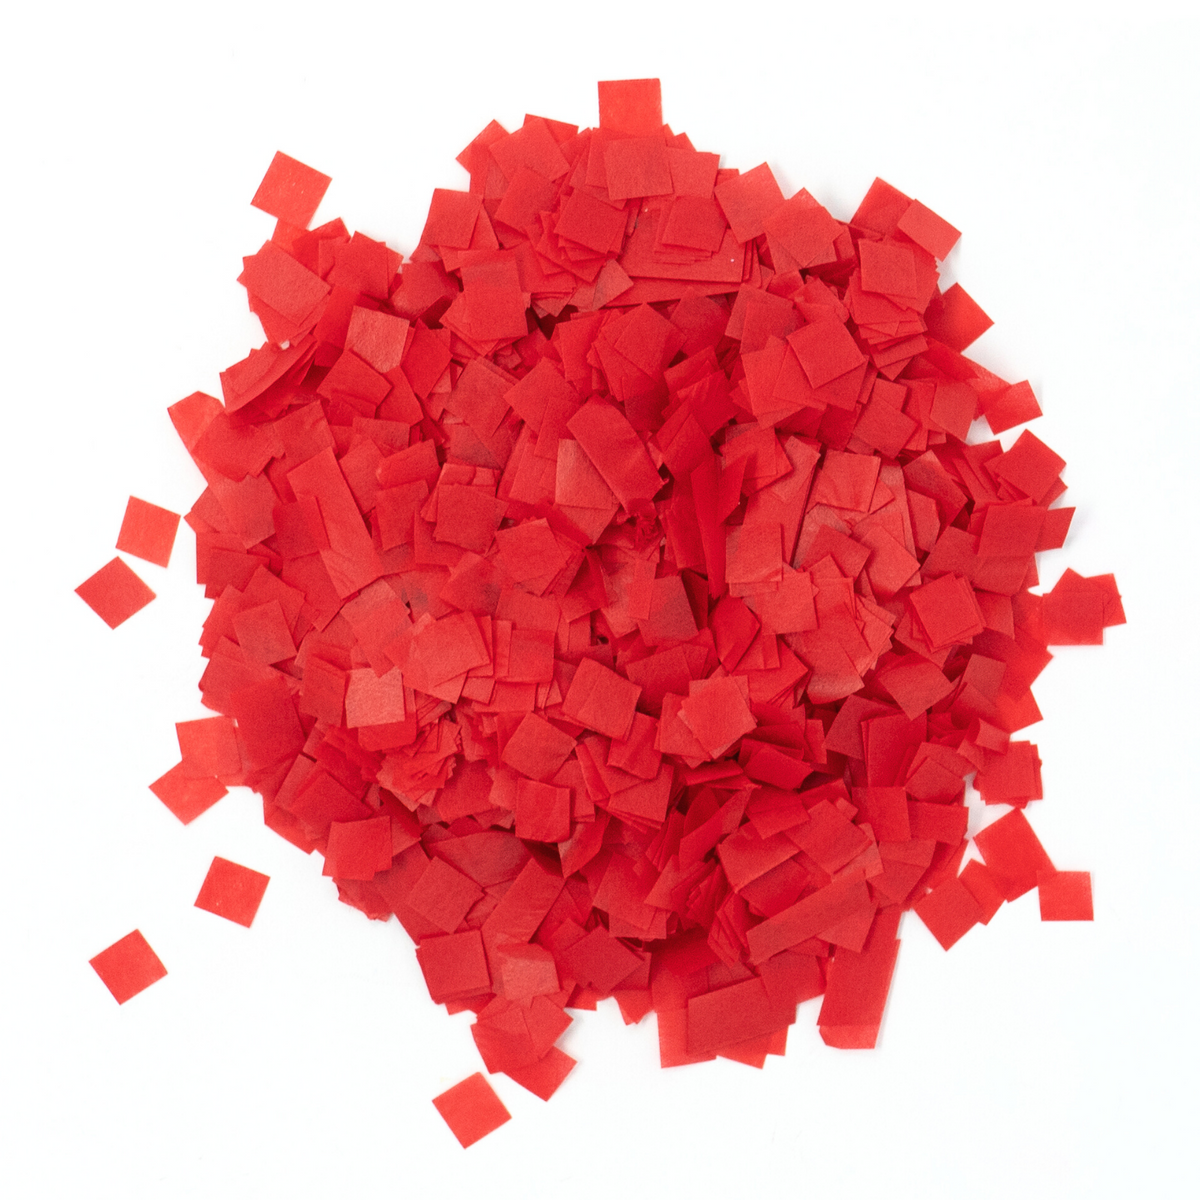 Red Tissue Paper Miniature Confetti (1 Pound Bulk)